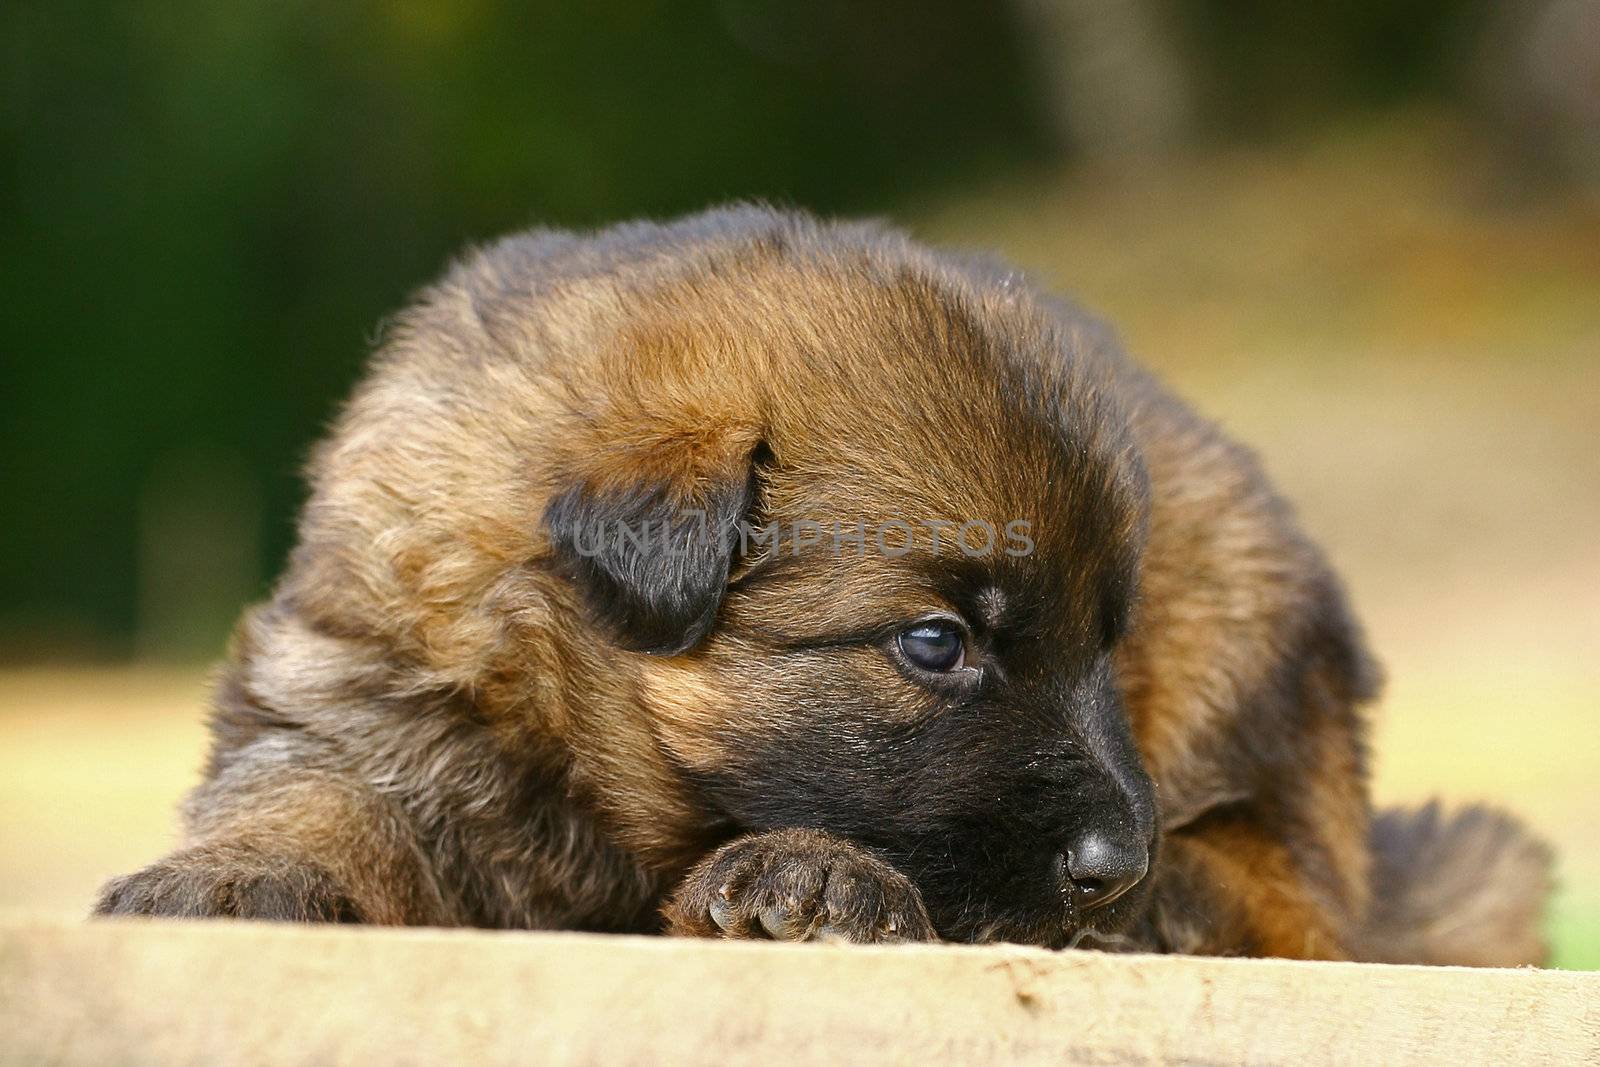 Shepherd puppy by gsdonlin